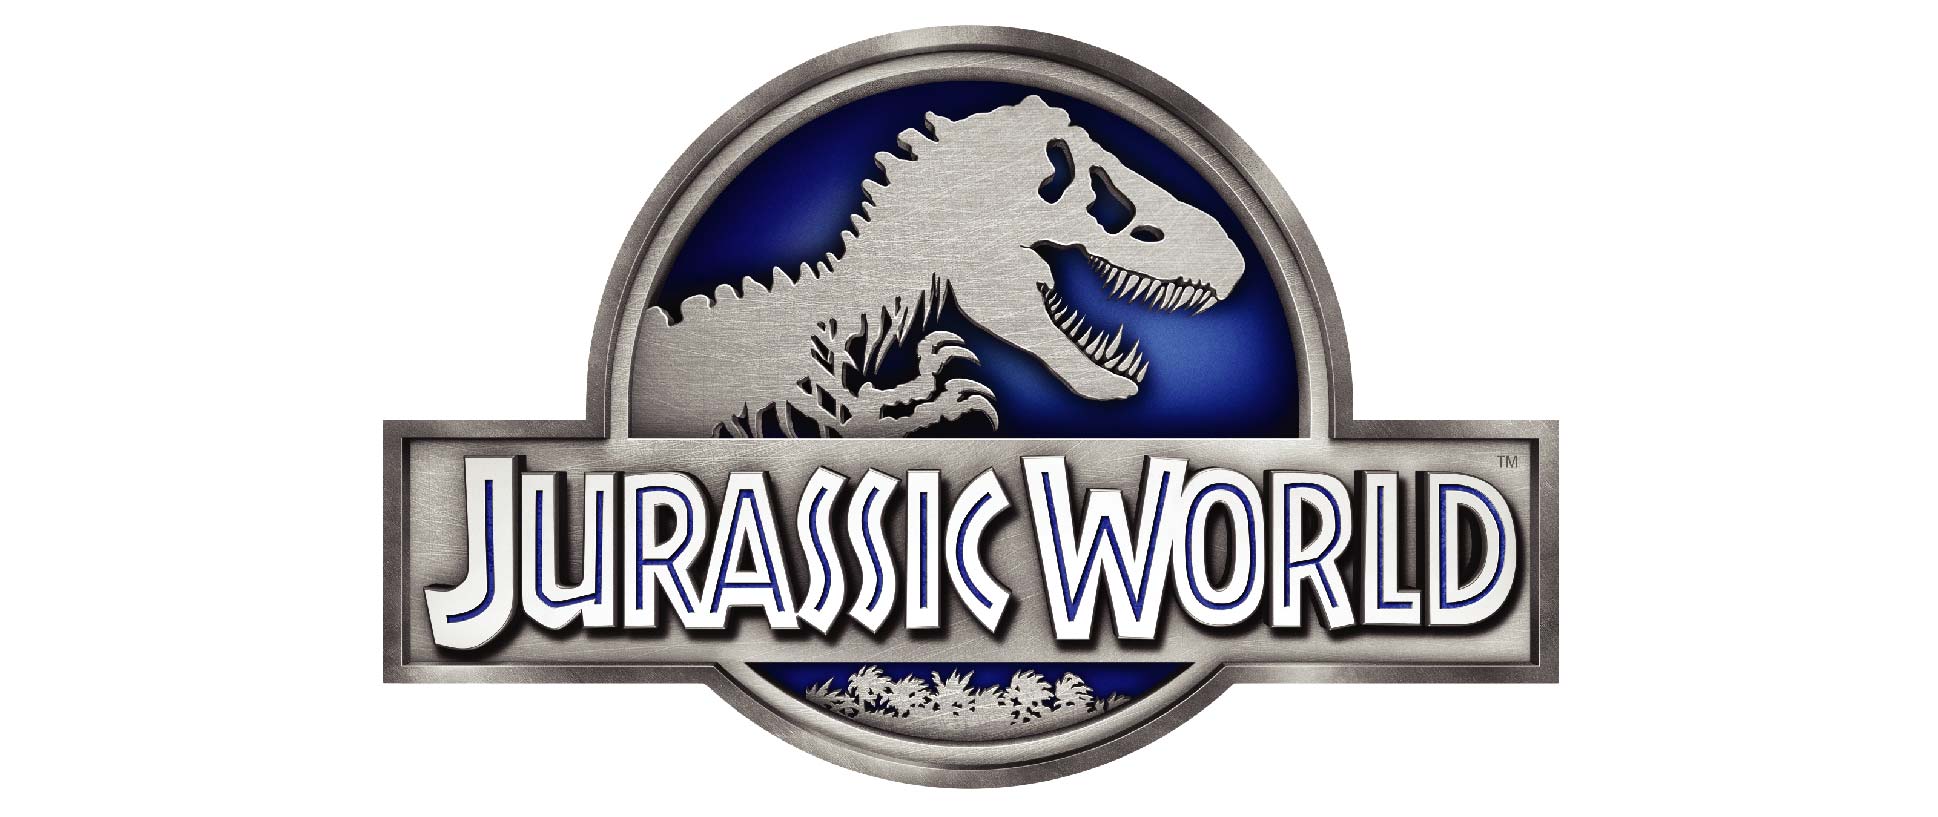 Camp Cretaceous: primo teaser dello spinoff animato di Jurassic World thumbnail